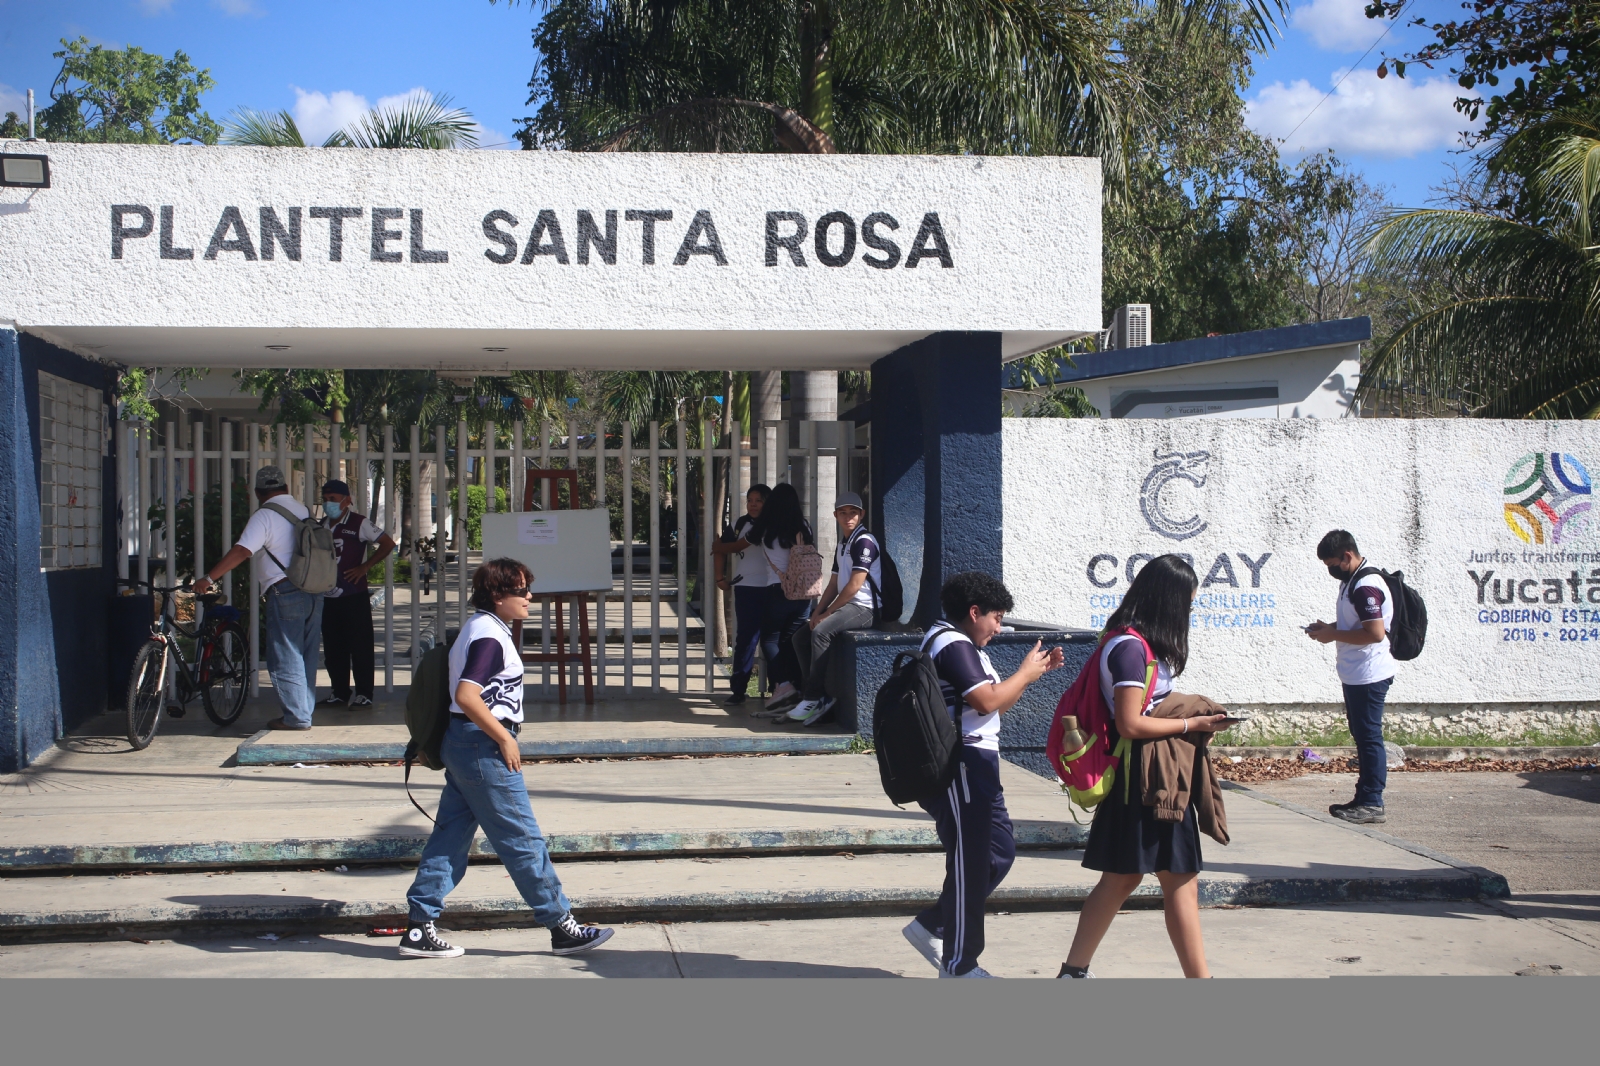 Yucatán: Casa por casa, Cobay recupera a alumnos desertores por la pandemia